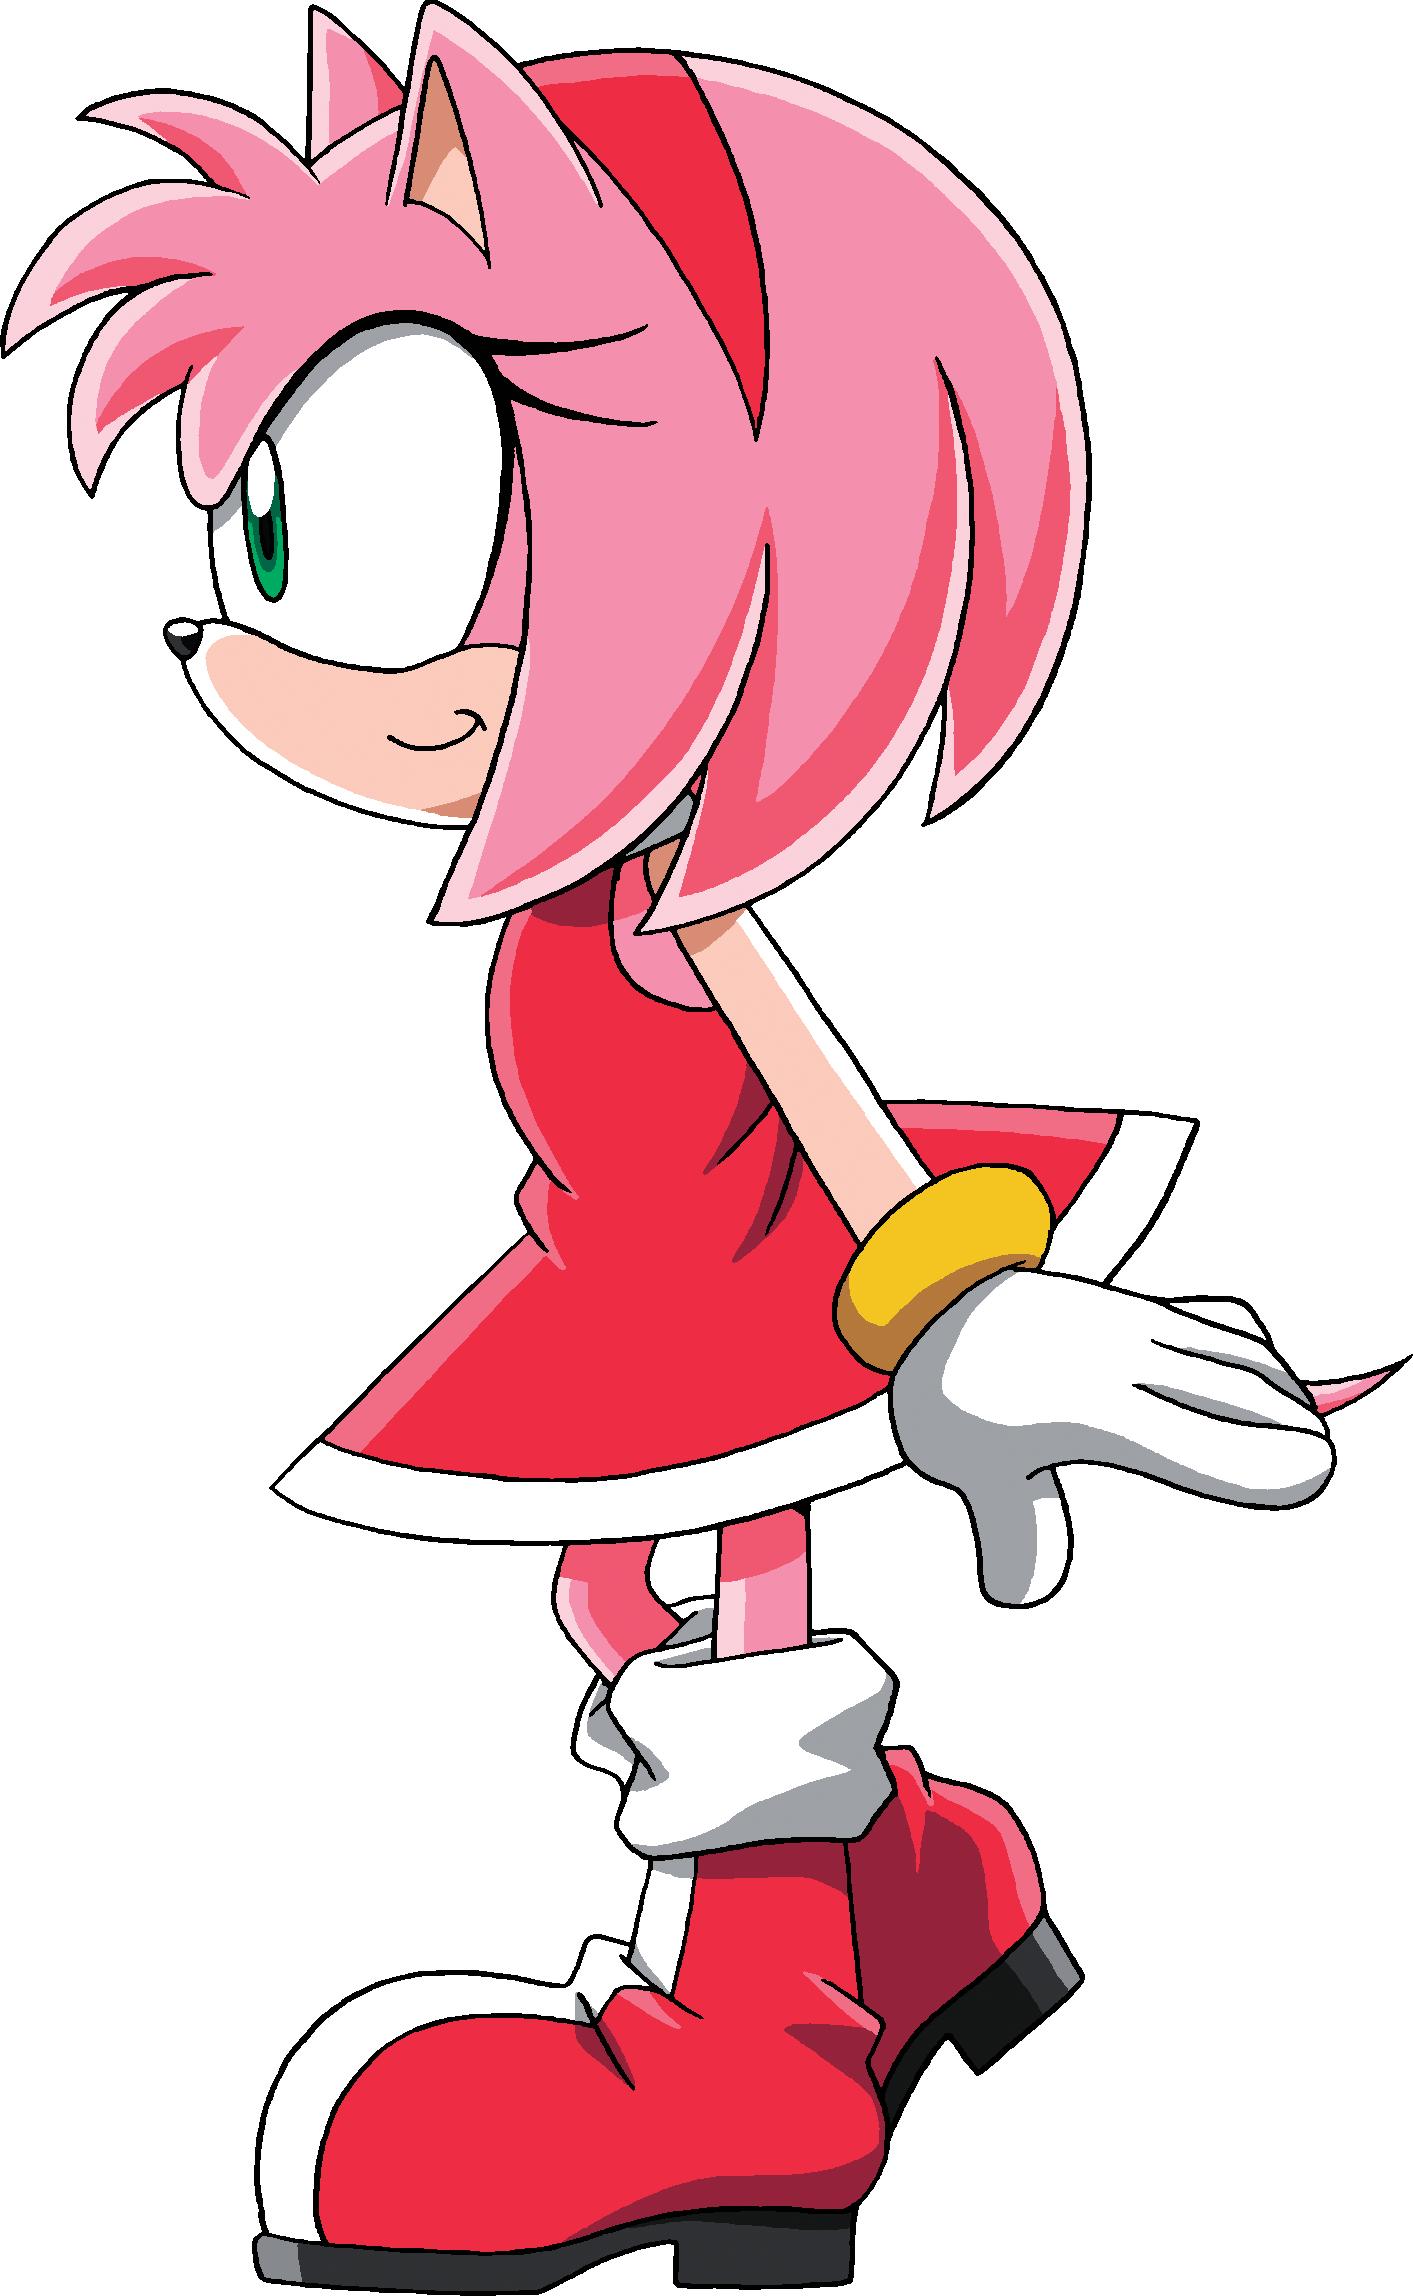 Amy Rose The Hedgehog (1413x2296)